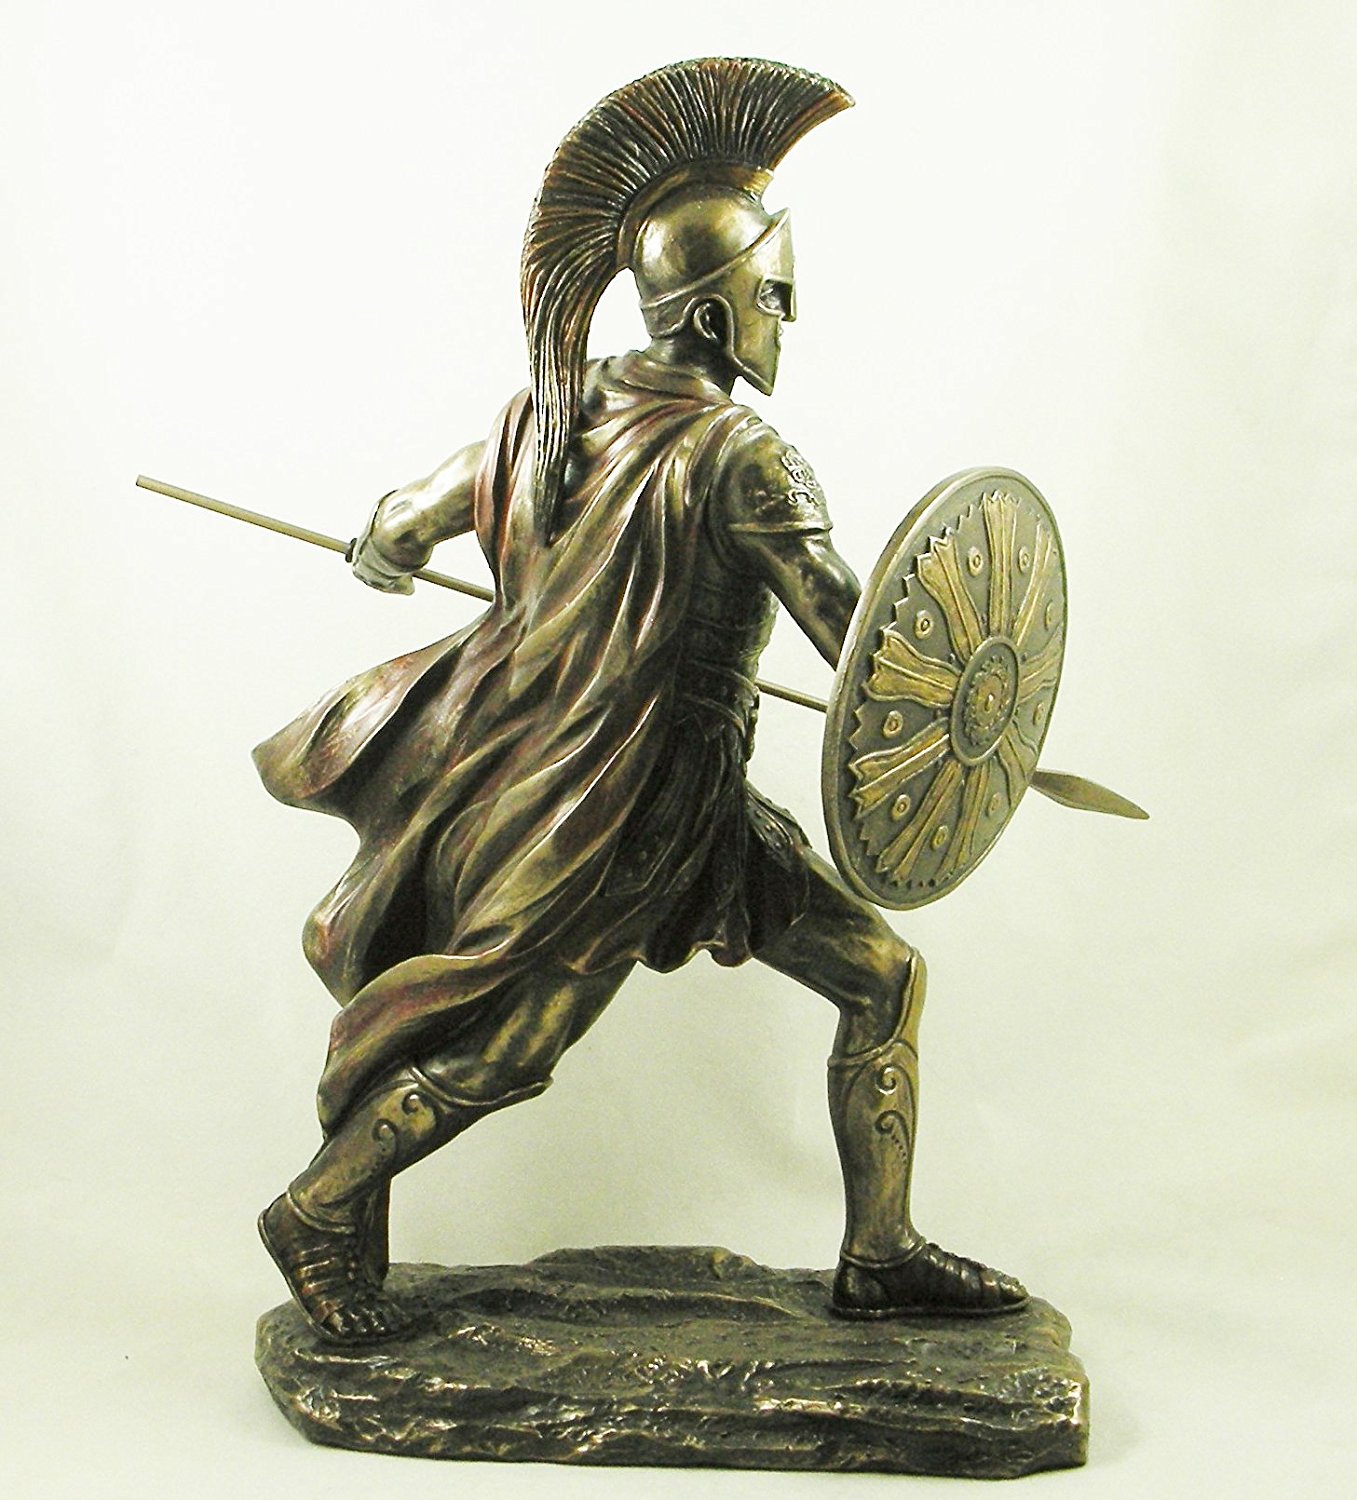 Achilles' Ancient Greek Warrior Bronzed Statue Figurine Sculpture ...